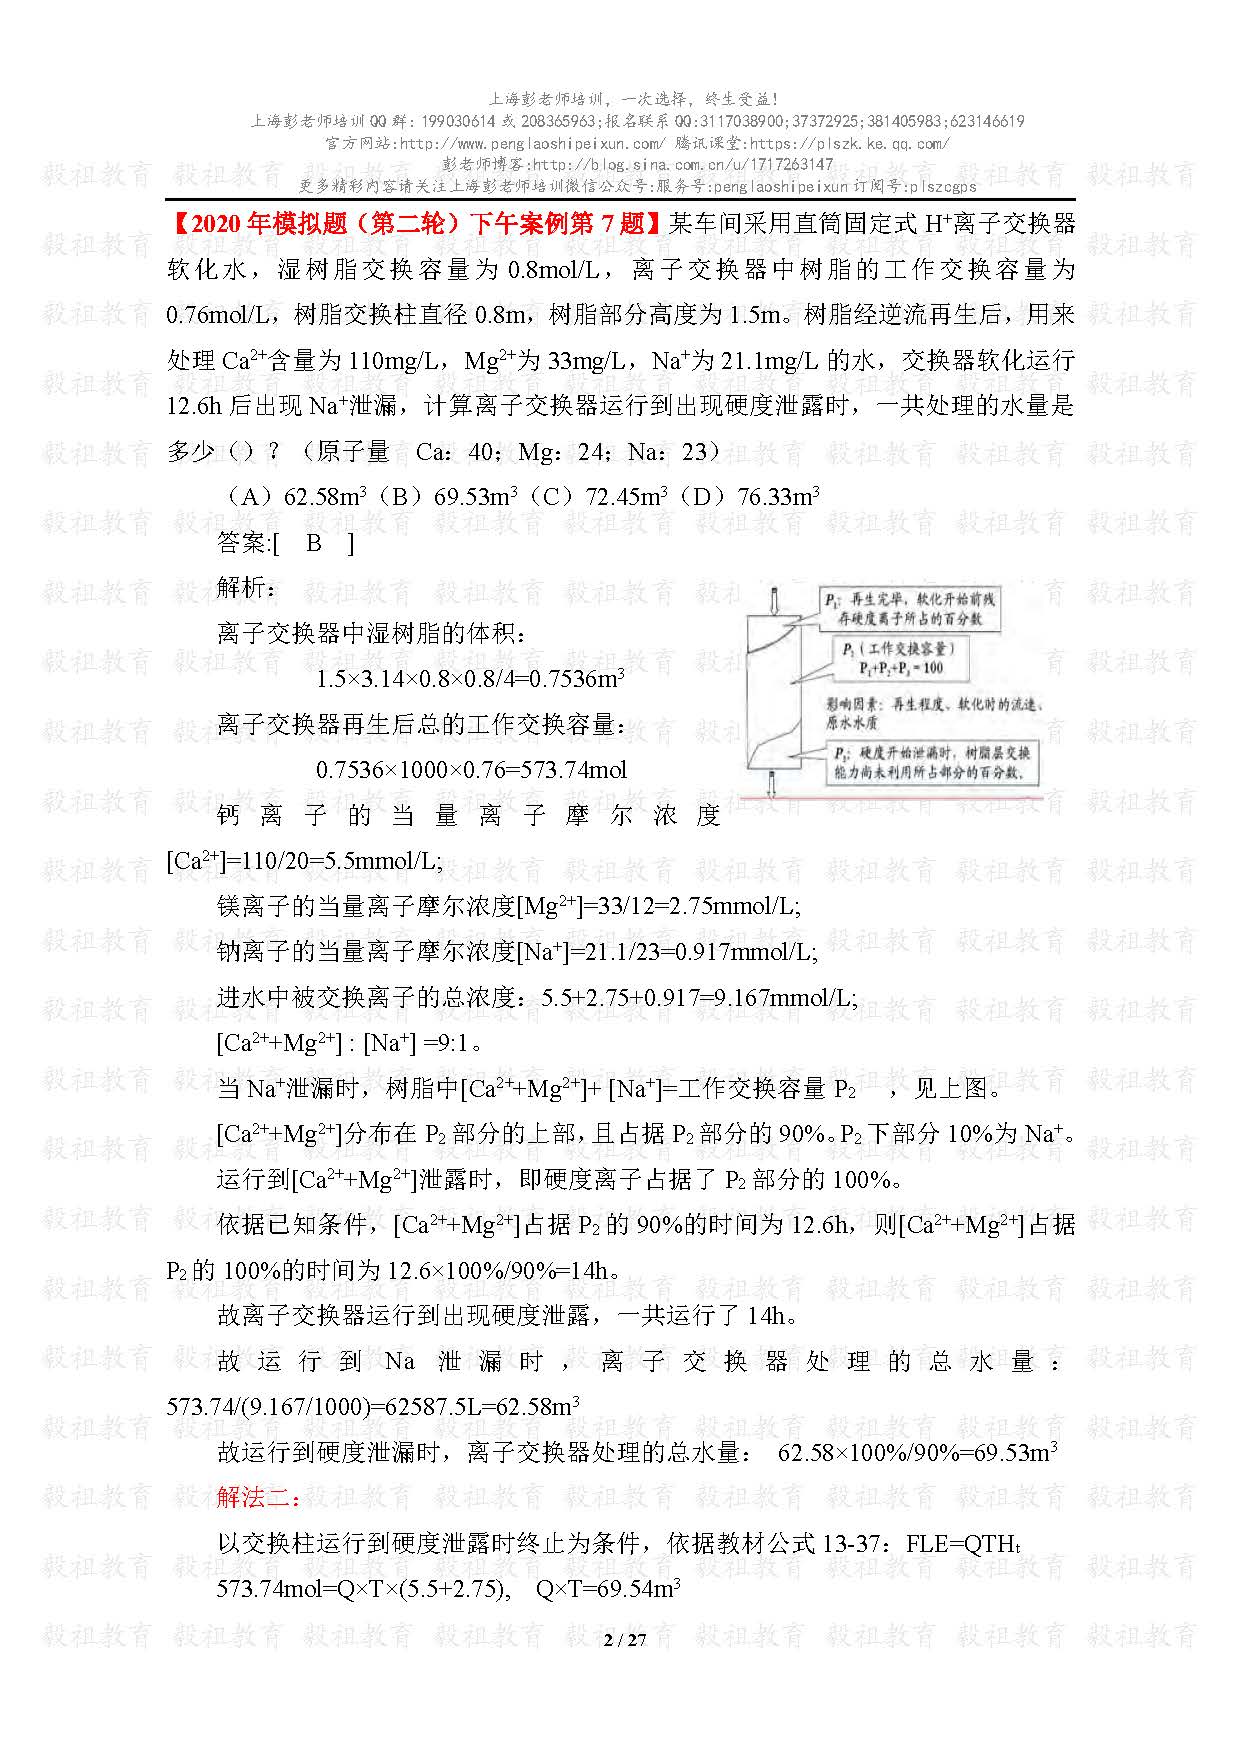 2020注册给排水考试真题与模考题相似度分析-上海彭老师培训_页面_02.jpg.jpg